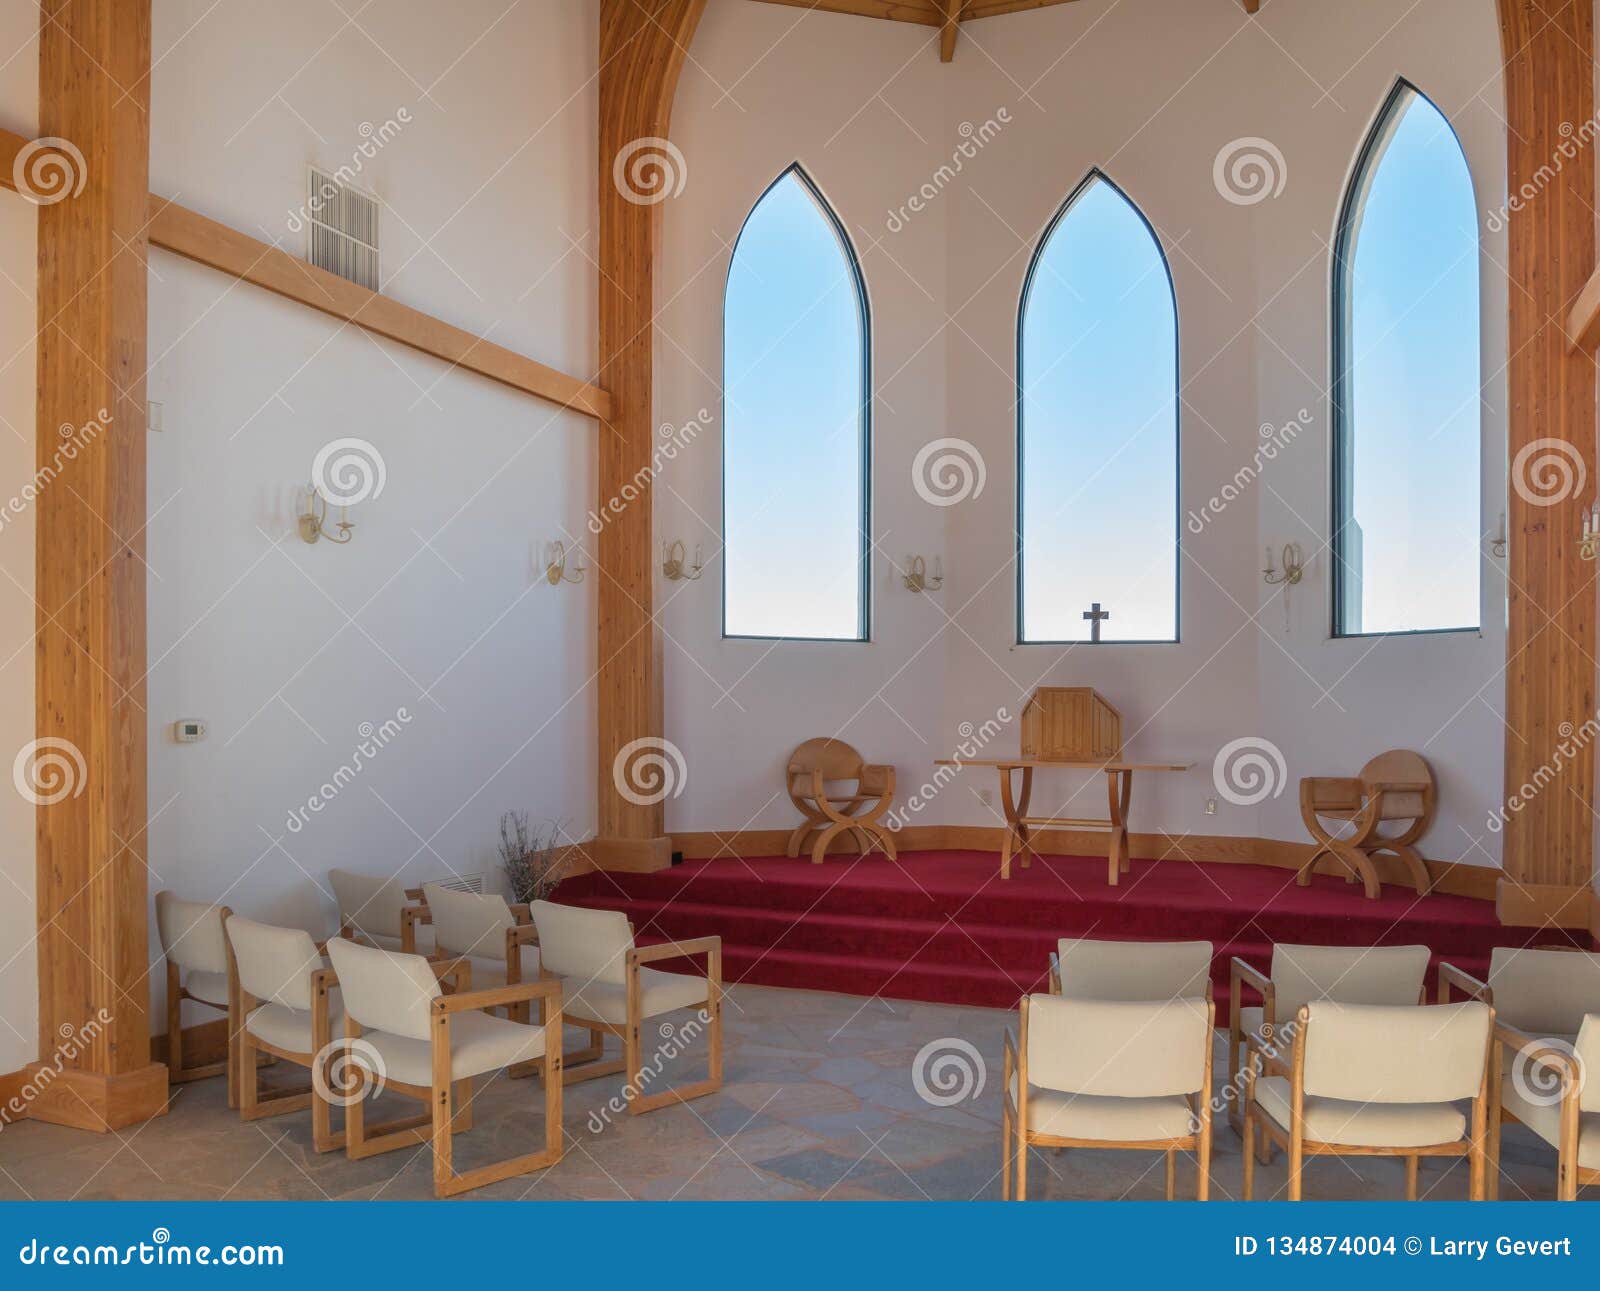 interior, the church at felicity, california